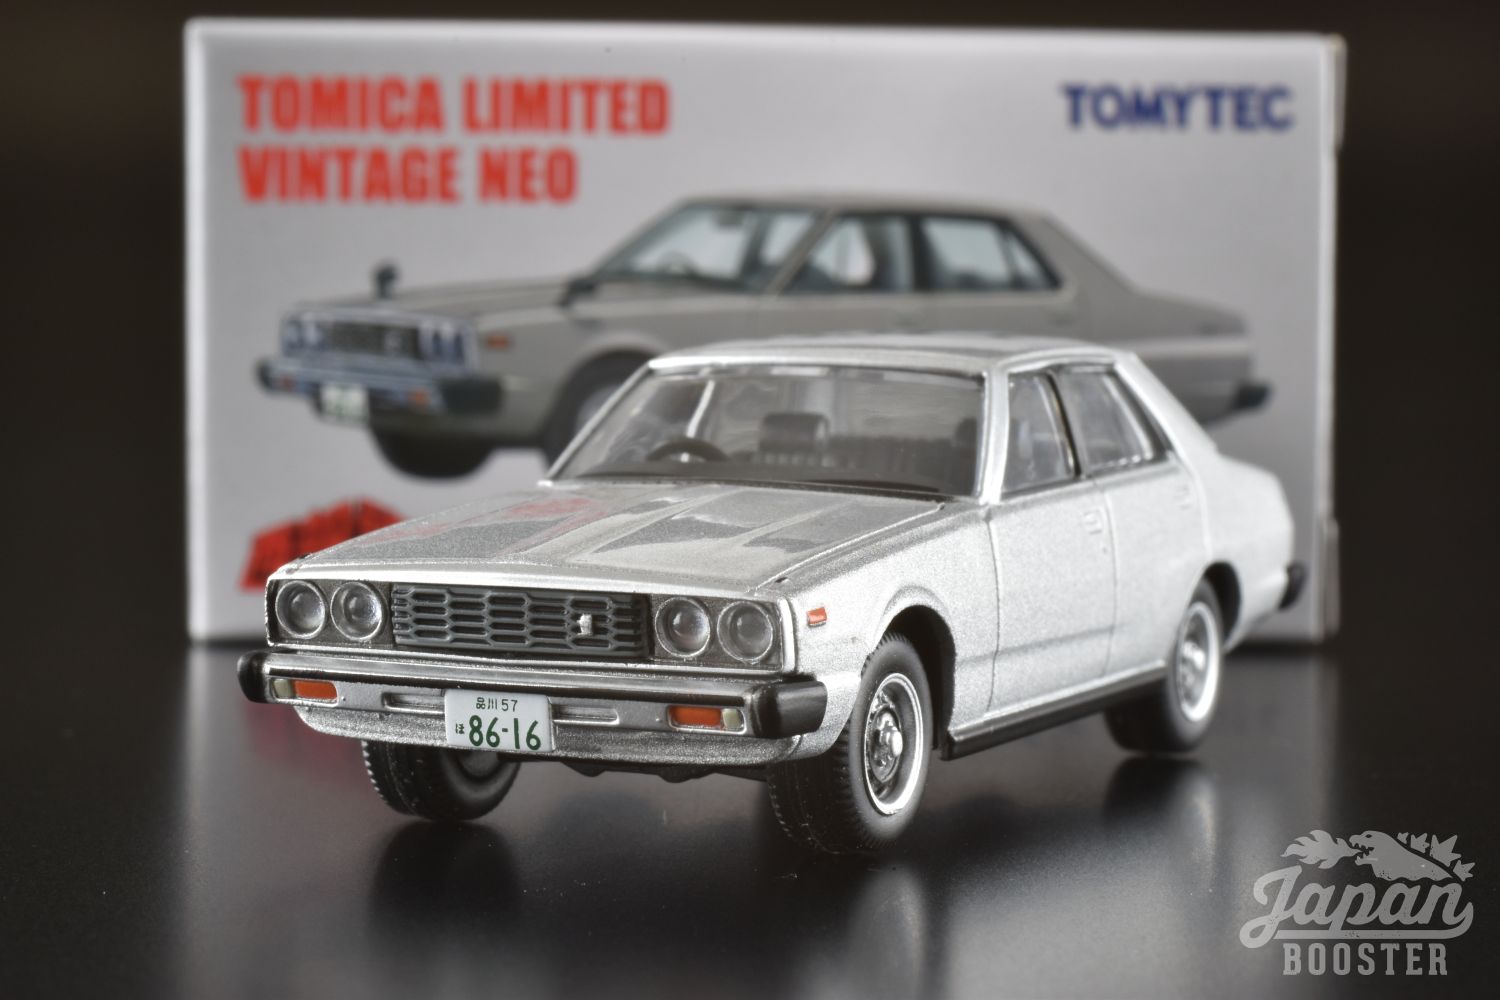 Tomytec Tomica Limited Vintage LV-162 Nissan Skyline 2000GT Vehicle Model 